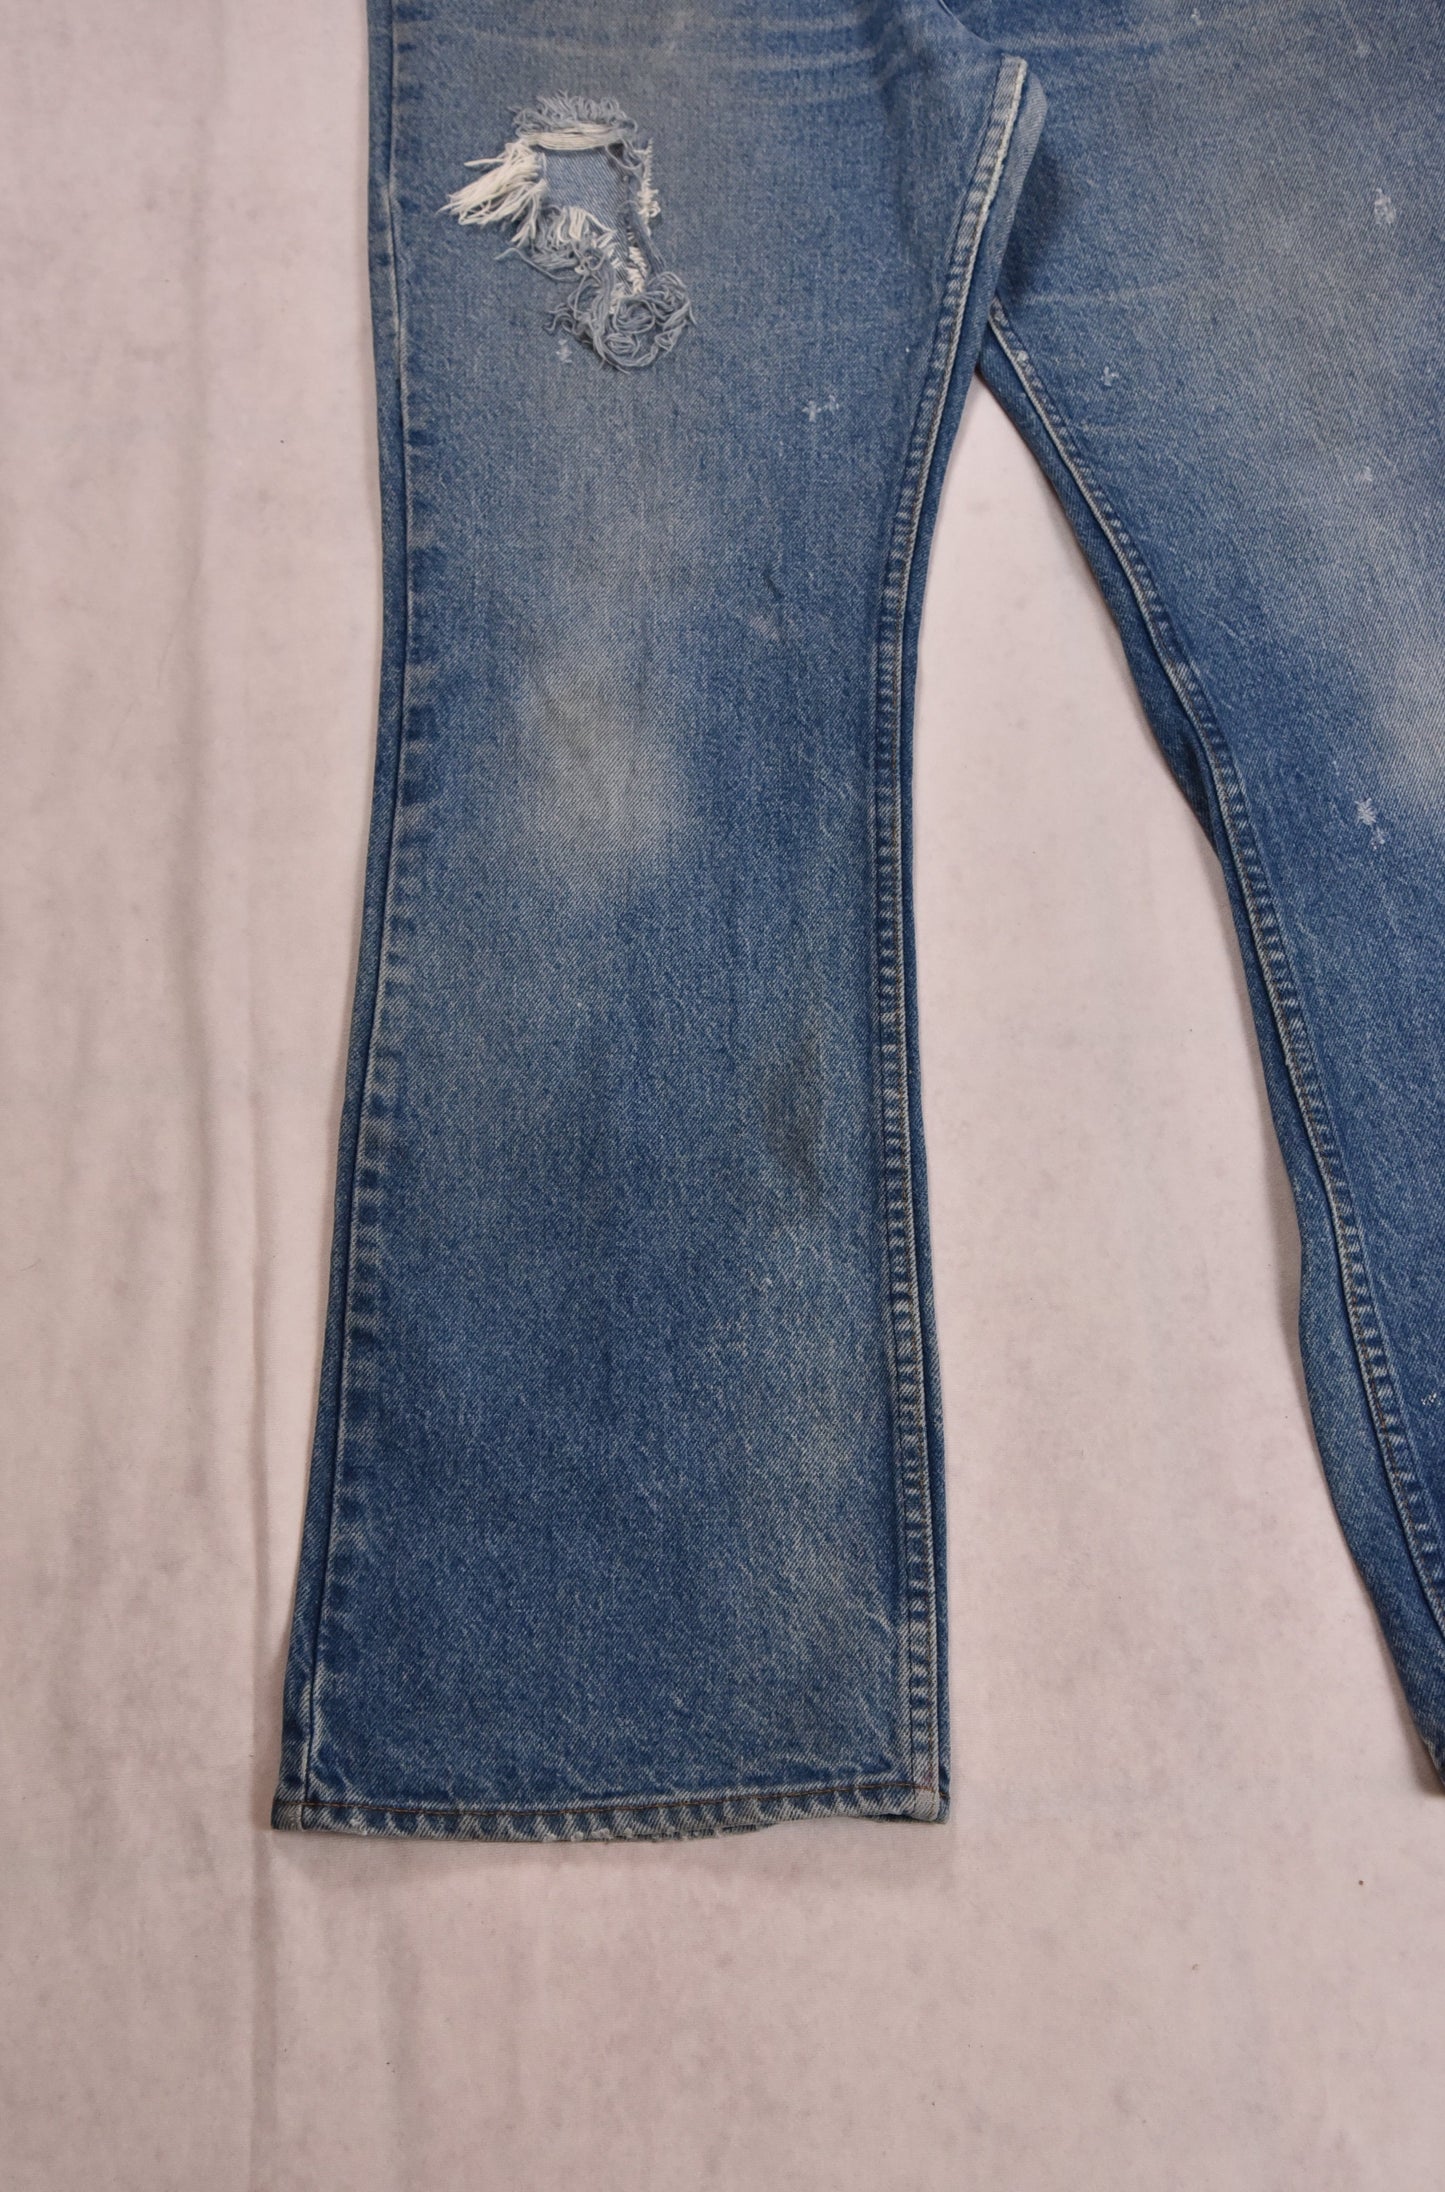 Jeans Levi's 517 con linguetta arancione vintage / 36x33